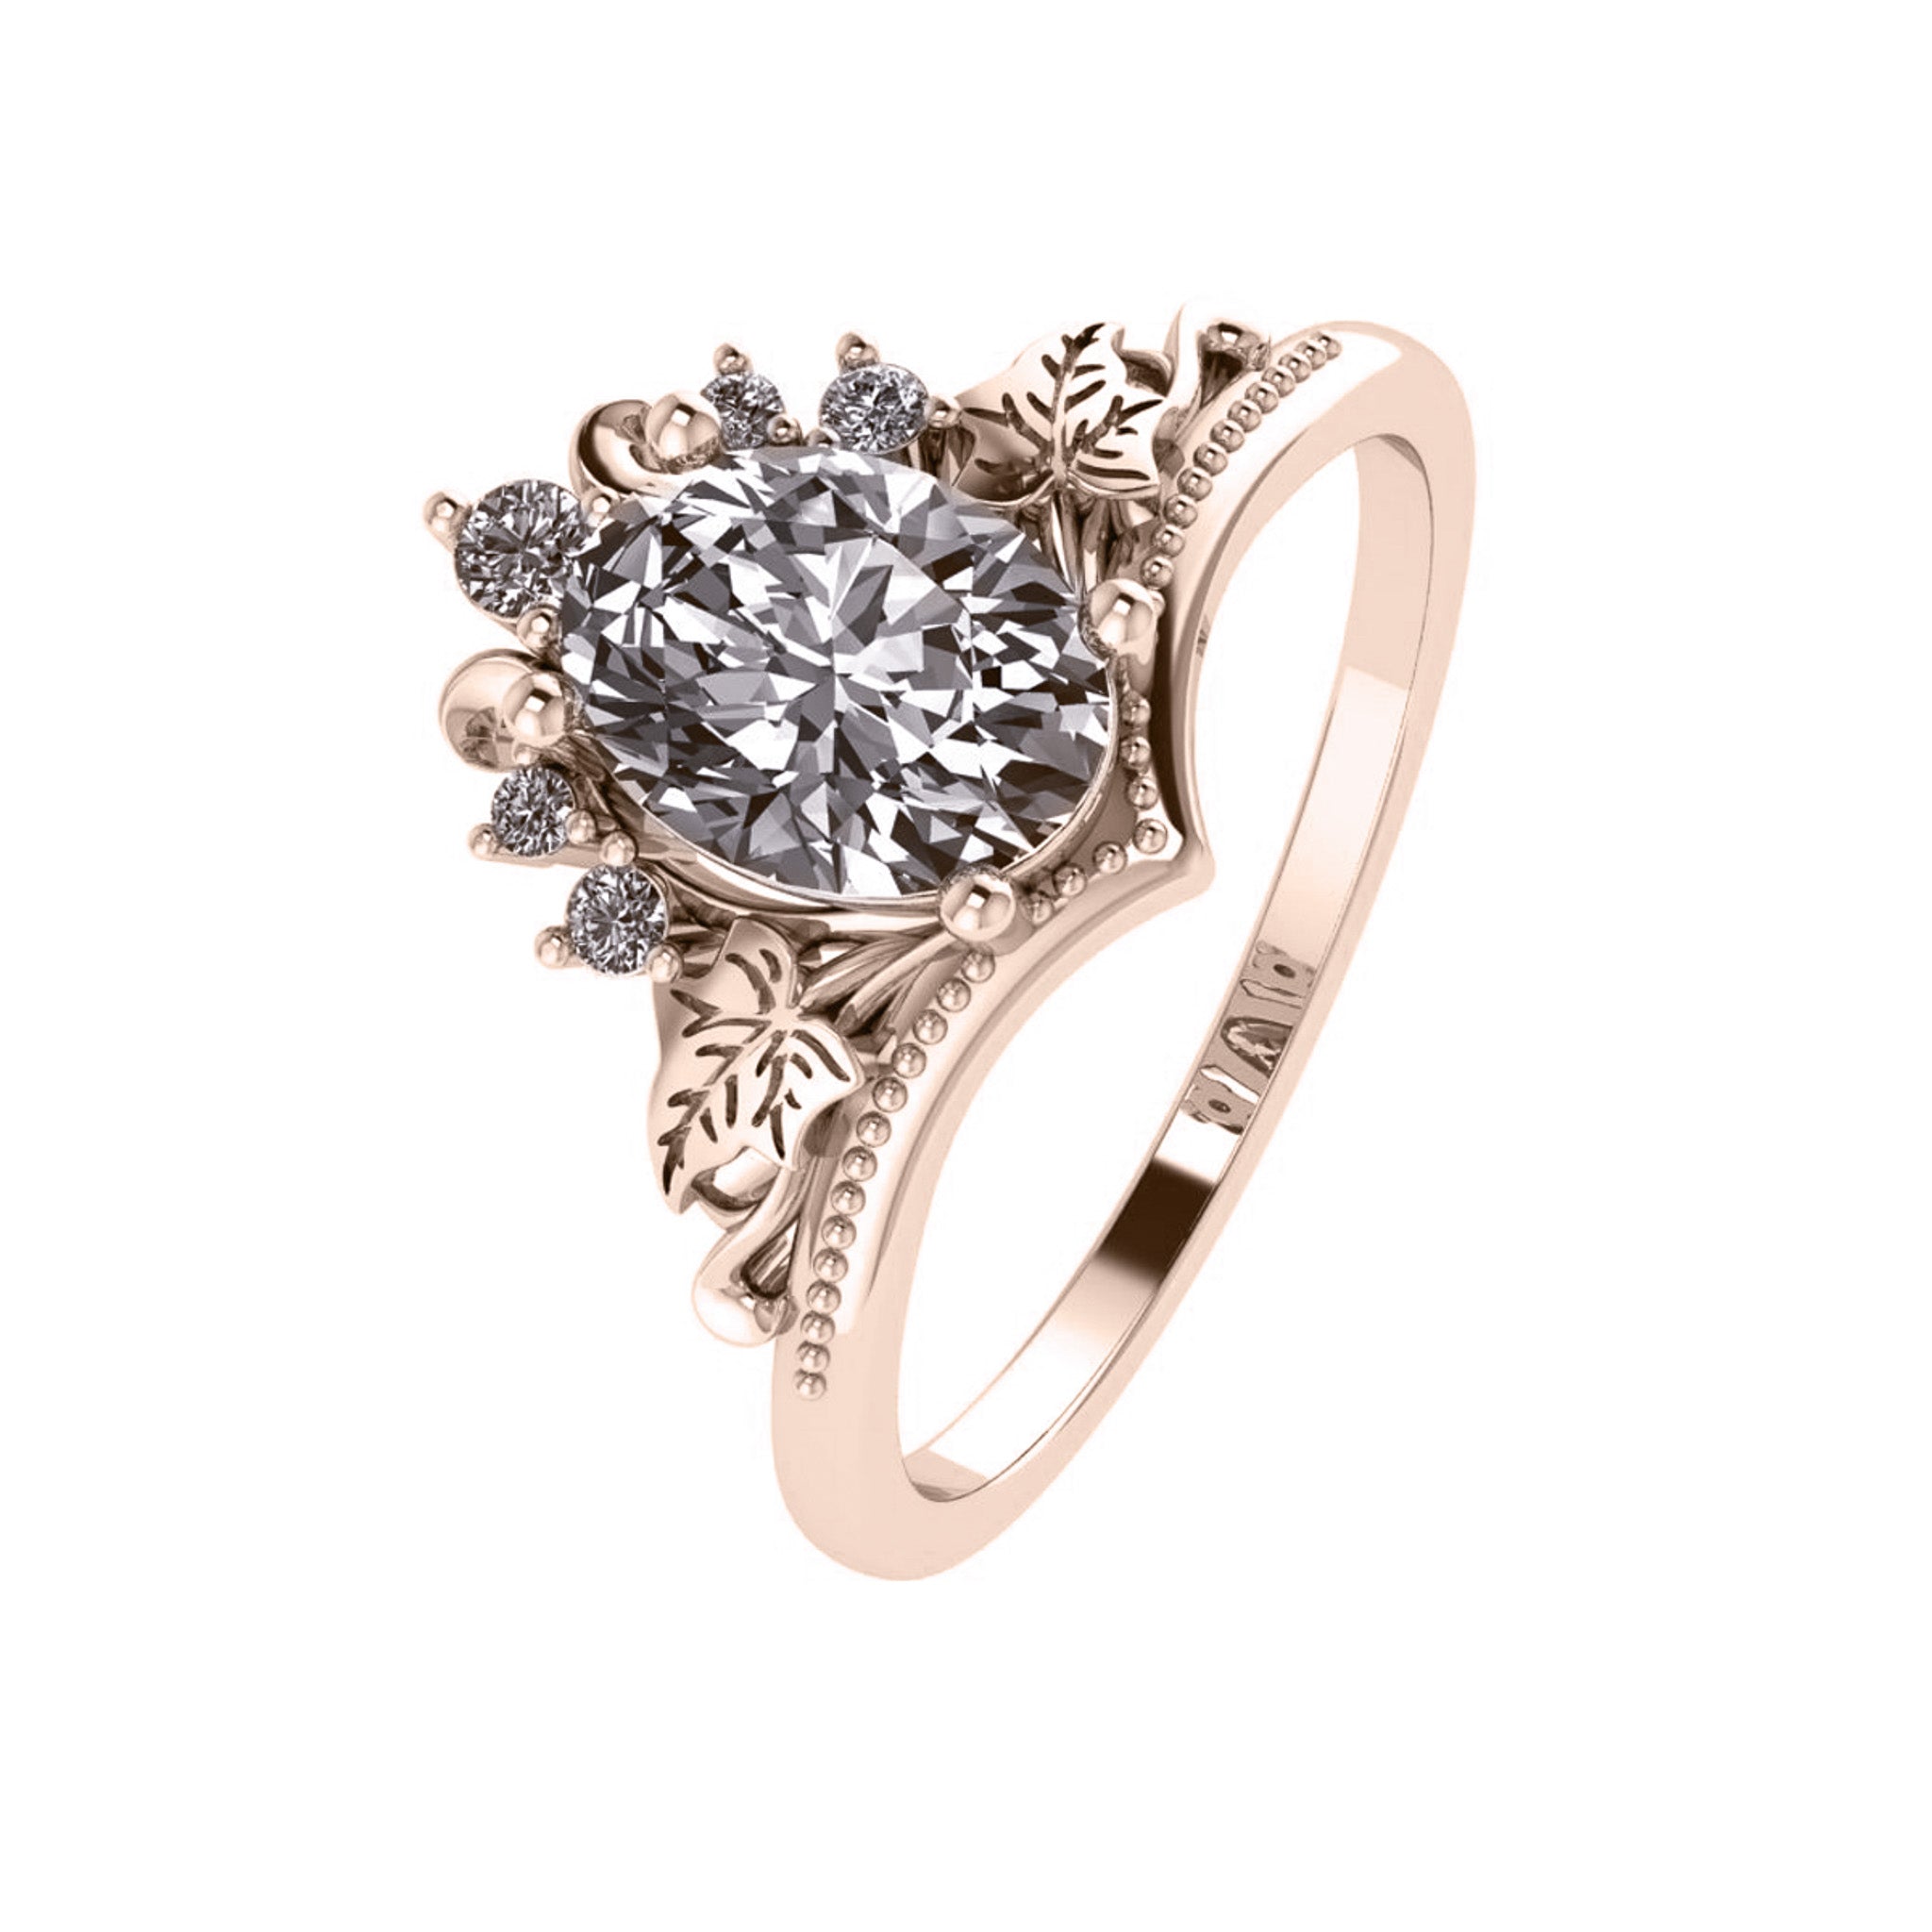 Ariadne | bridal ring set, oval cut 8x6 mm gemstone setting - Eden Garden Jewelry™